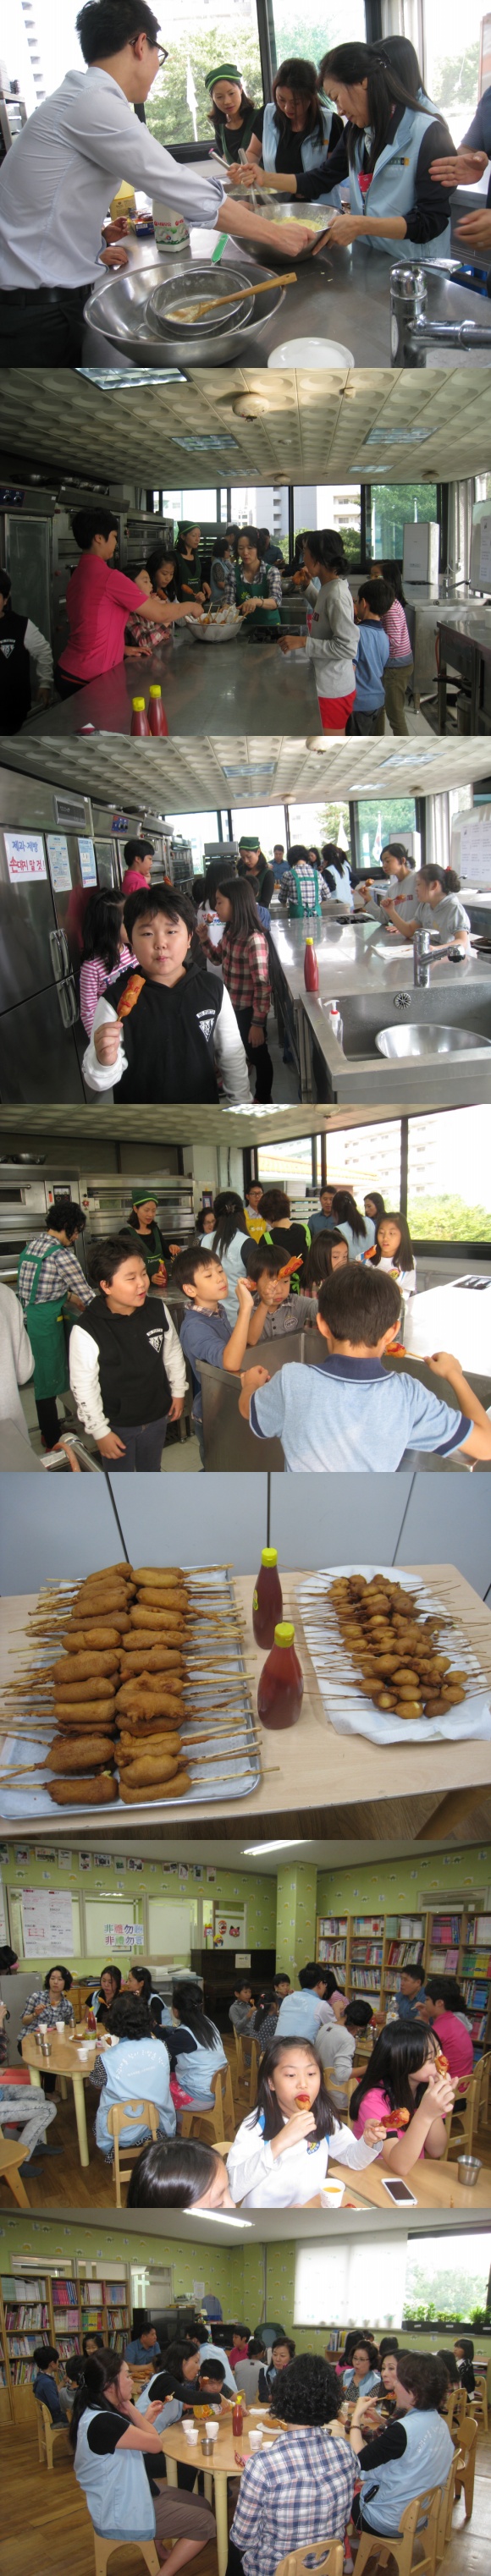 꿈초록 방과후 교실 오작교의 날 봉사자 분들과 아이들이 직접만든 핫도그를 먹는모습